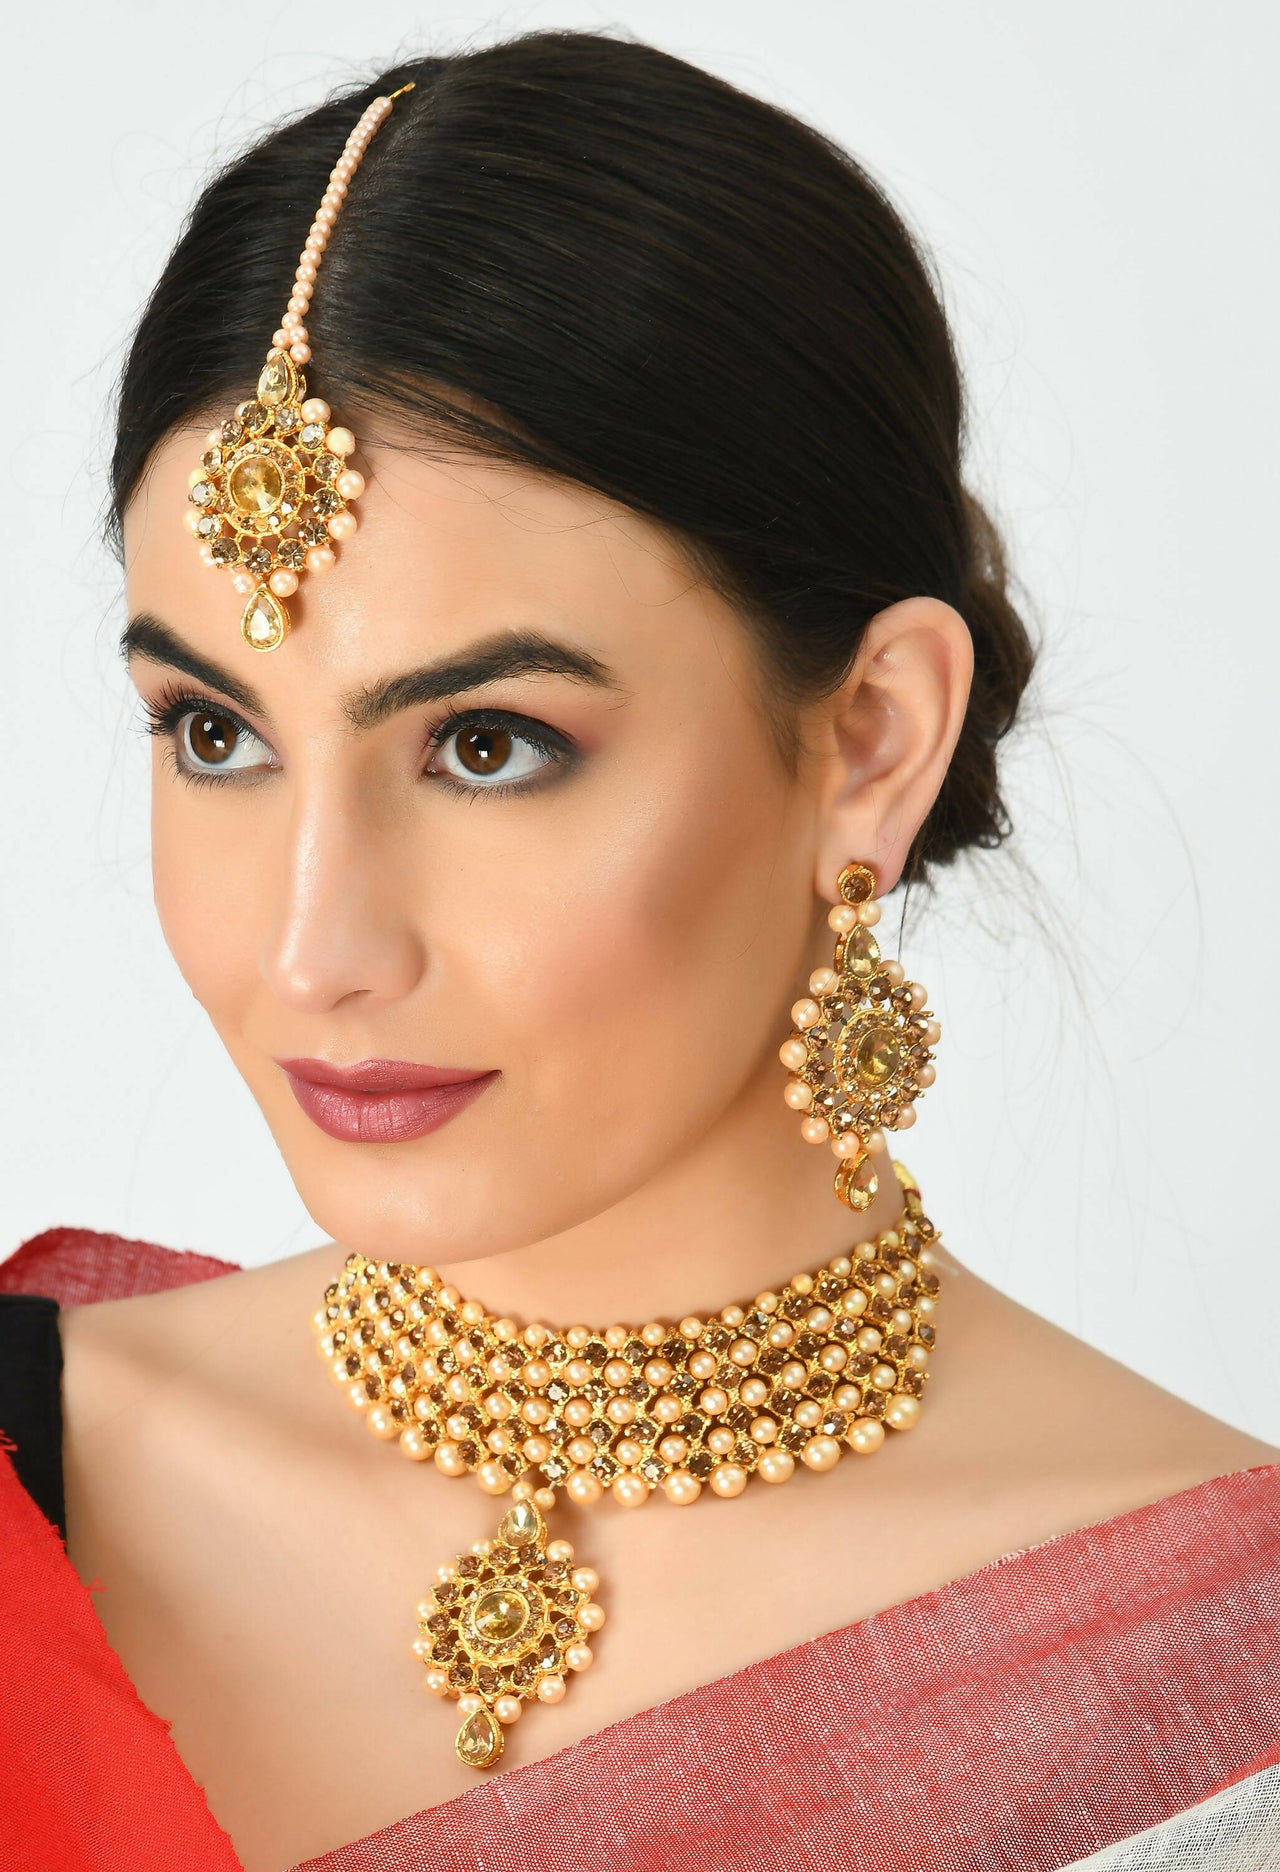 Mominos Fashion Johar Kamal Gold-Plated Brass Finish Kundan/Stone Choker For Women (Golden) - Distacart